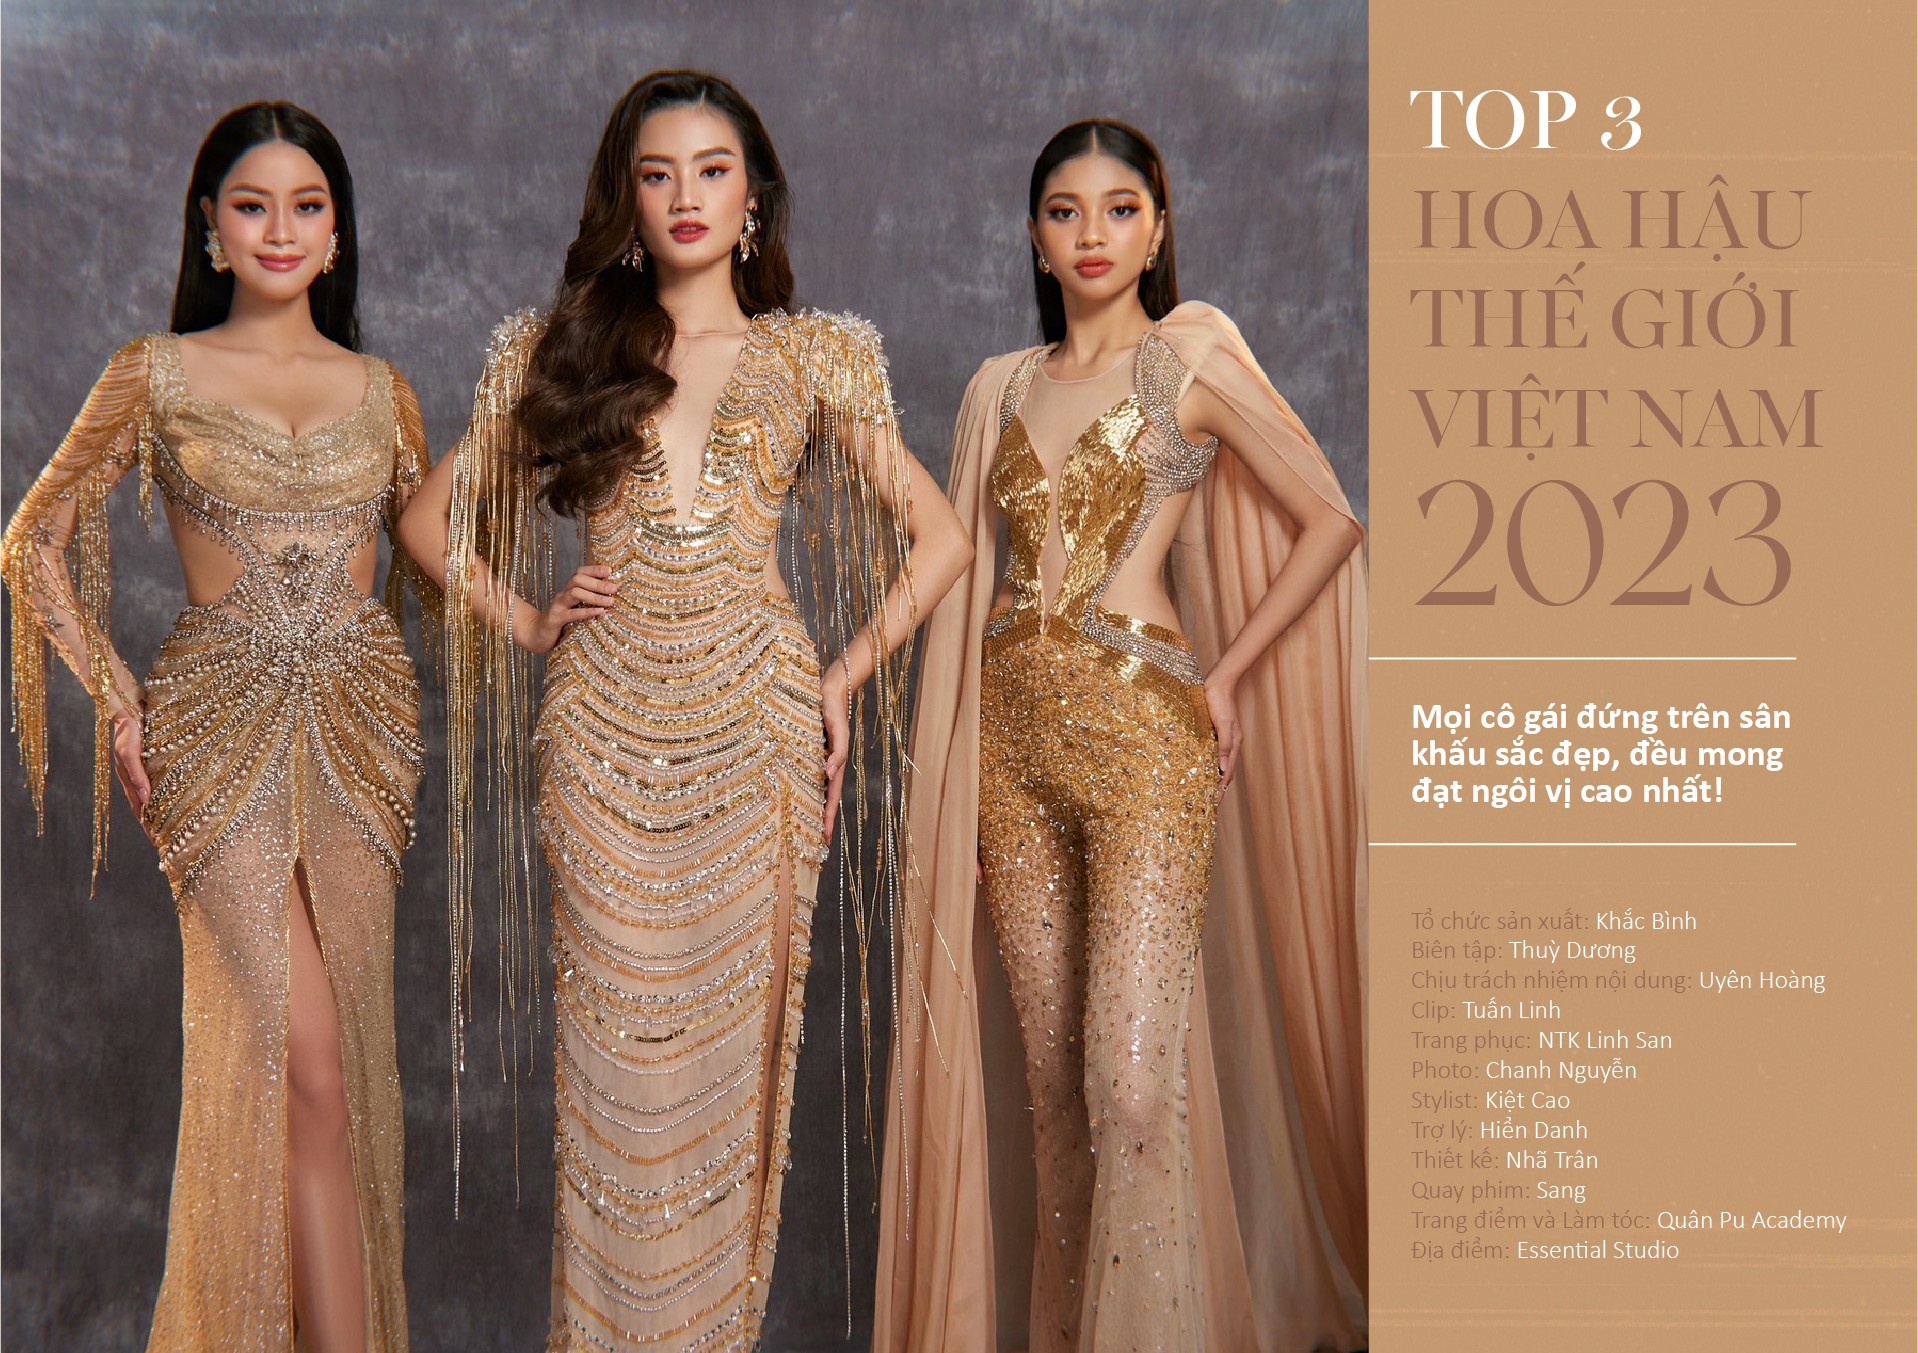 Top 3 Miss World Vietnam 2023: Mọi cô gái đứng trên sân khấu sắc đẹp, đều mong đạt ngôi vị cao nhất! - 20